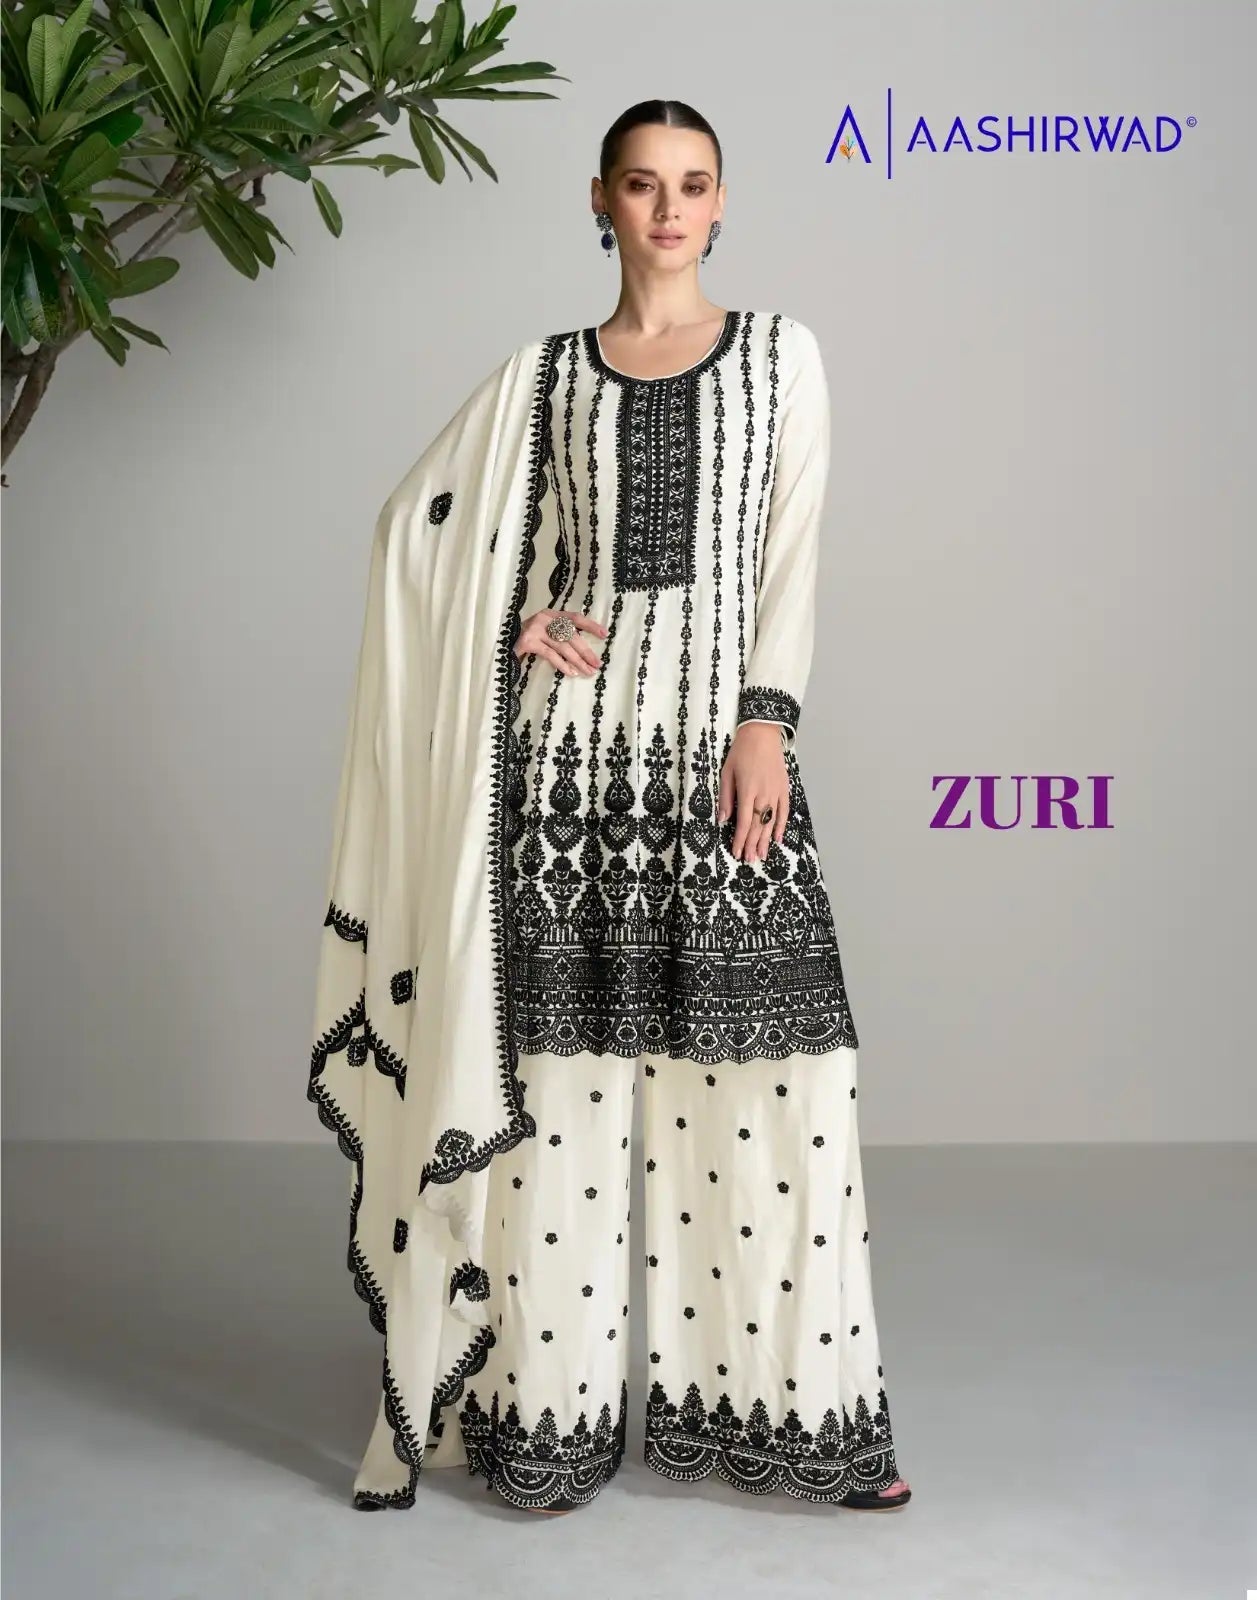 Aashirwad Zuri Sharara Co - Indian Dress House 786